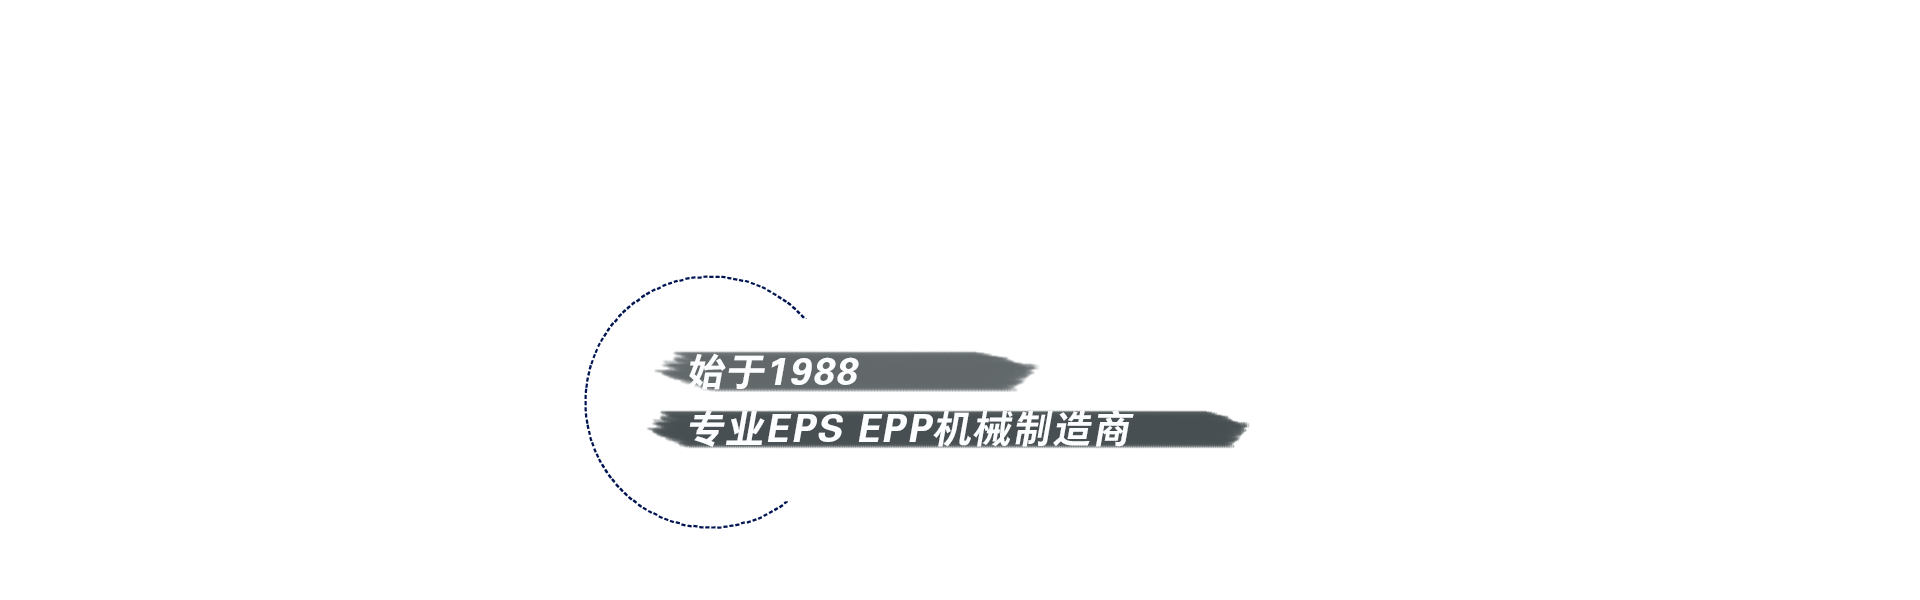 方圆官网横幅20200310——浮层中文. png